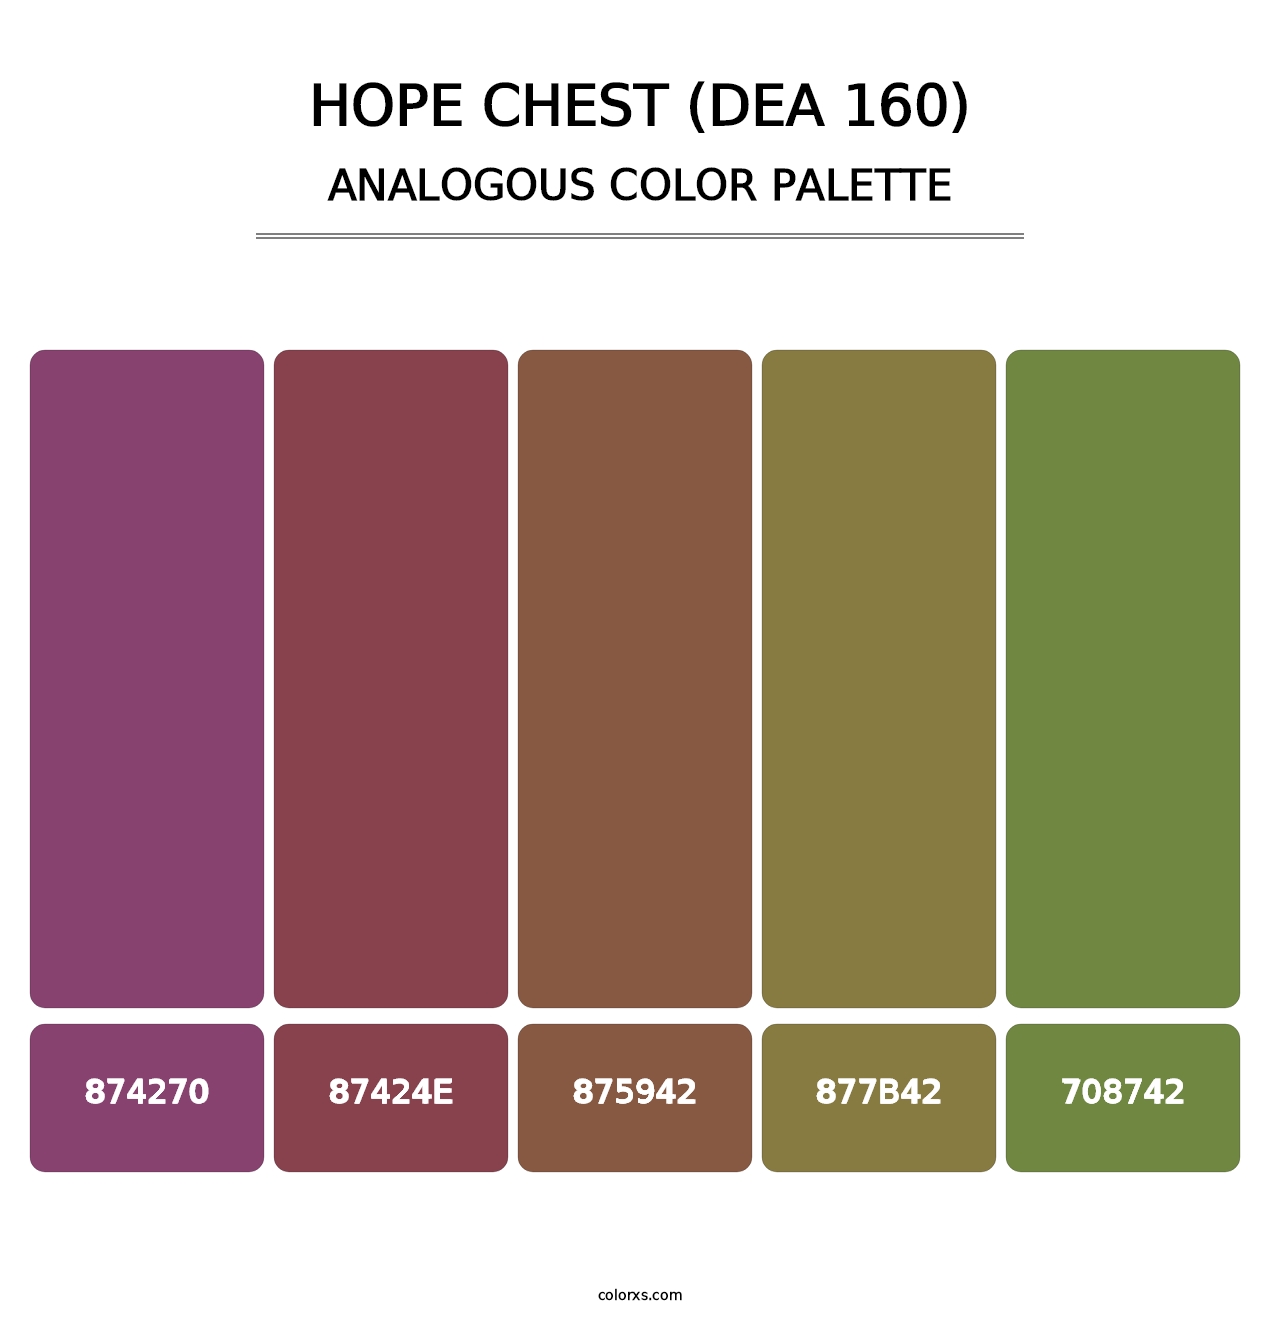 Hope Chest (DEA 160) - Analogous Color Palette